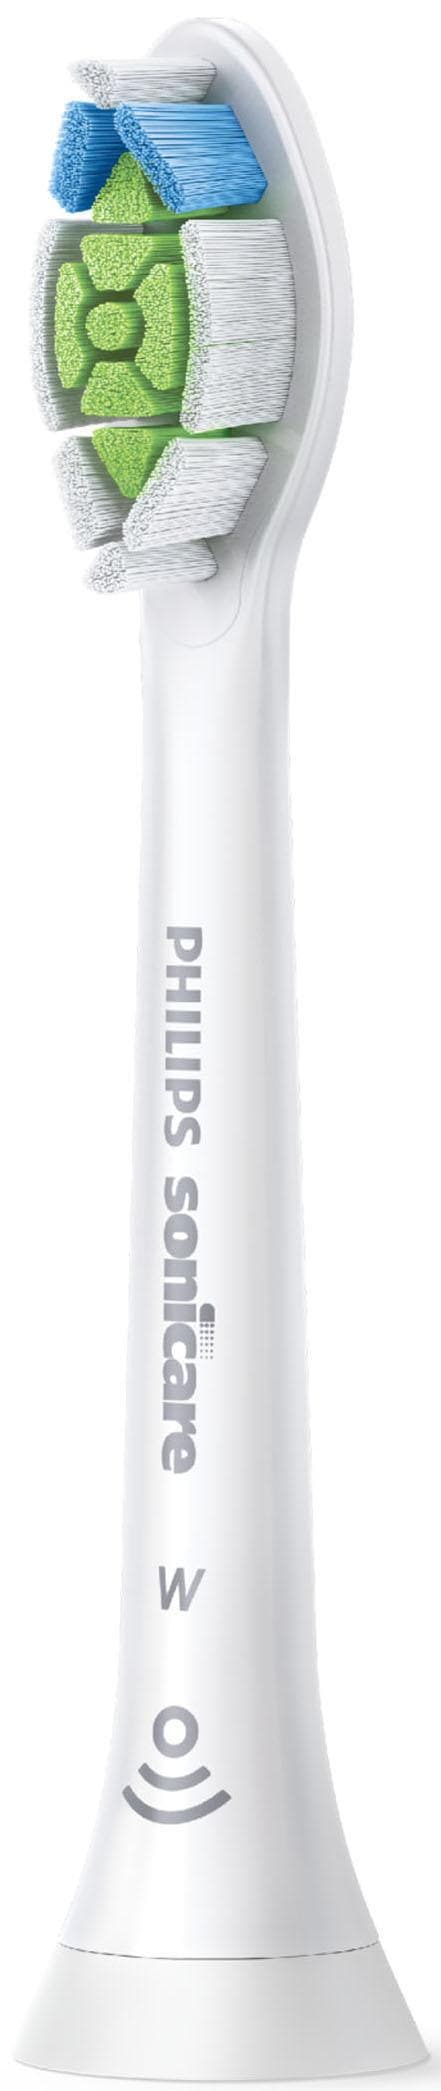 Philips Sonicare Aufsteckbürsten »W2 Optimal White Standard«, mit der Bürstenkopferkennung, Standardgrösse